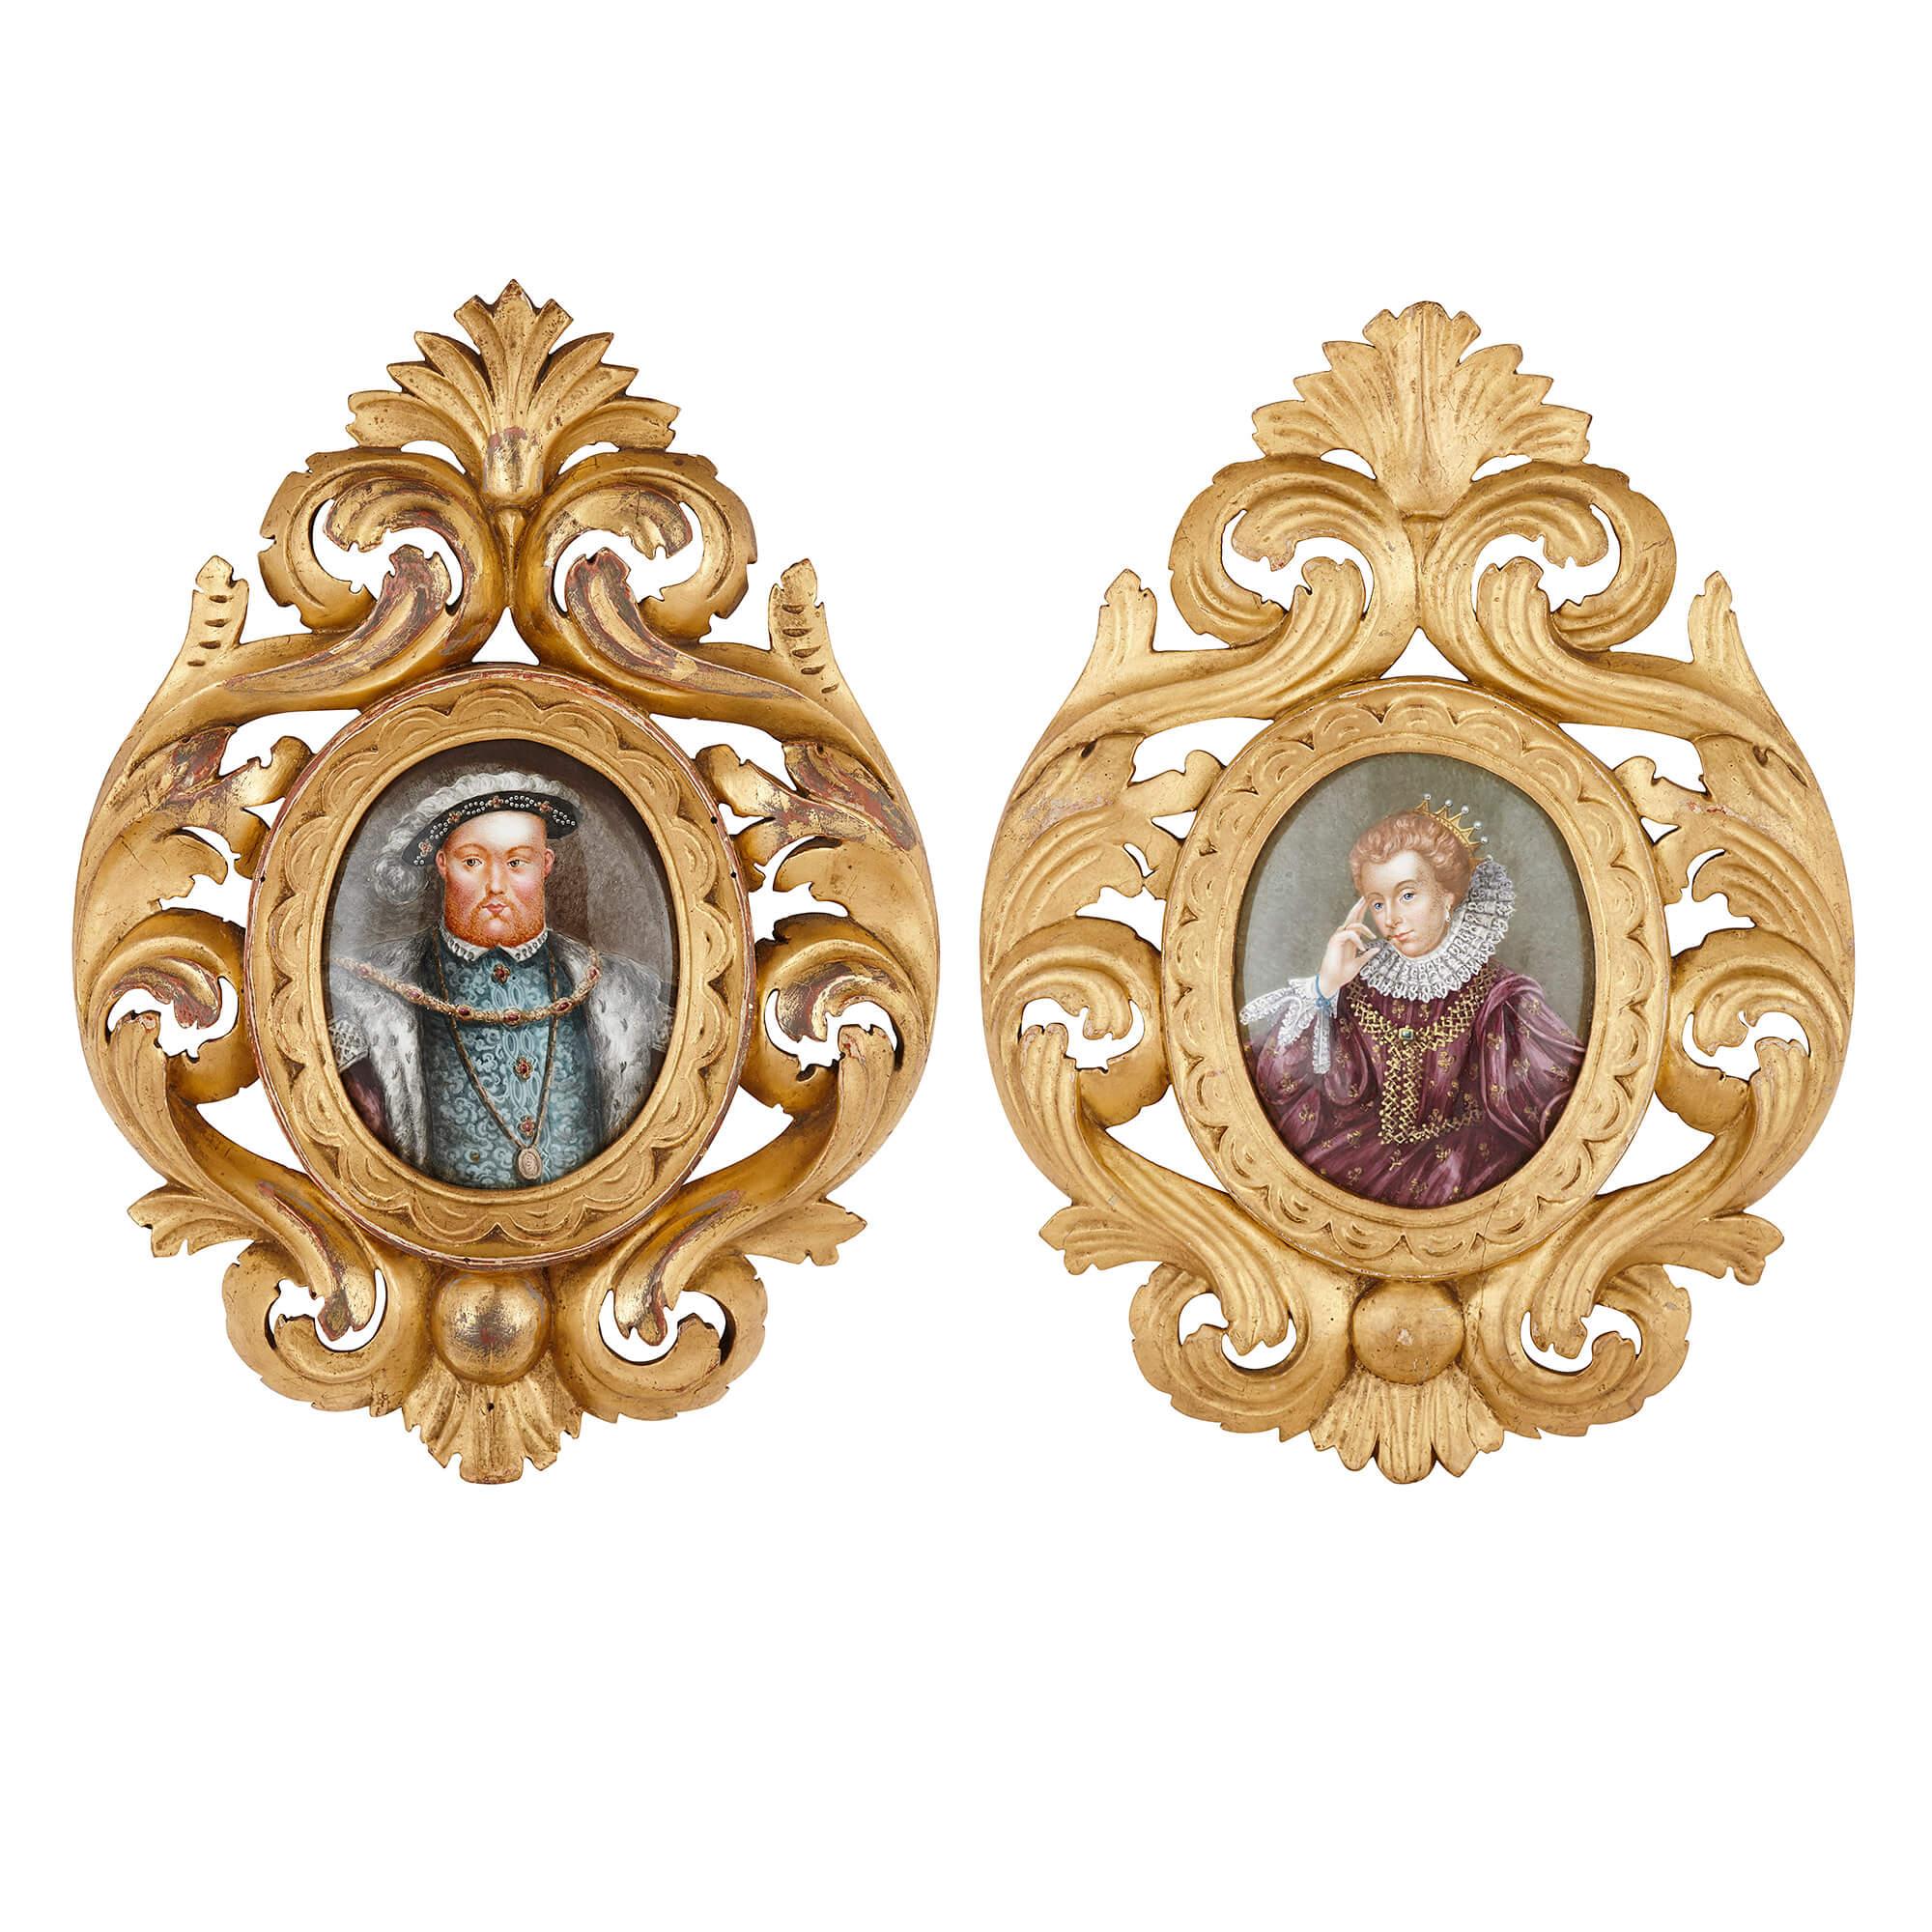 Dos pinturas esmaltadas de Limoges, incluido el retrato de Enrique VIII